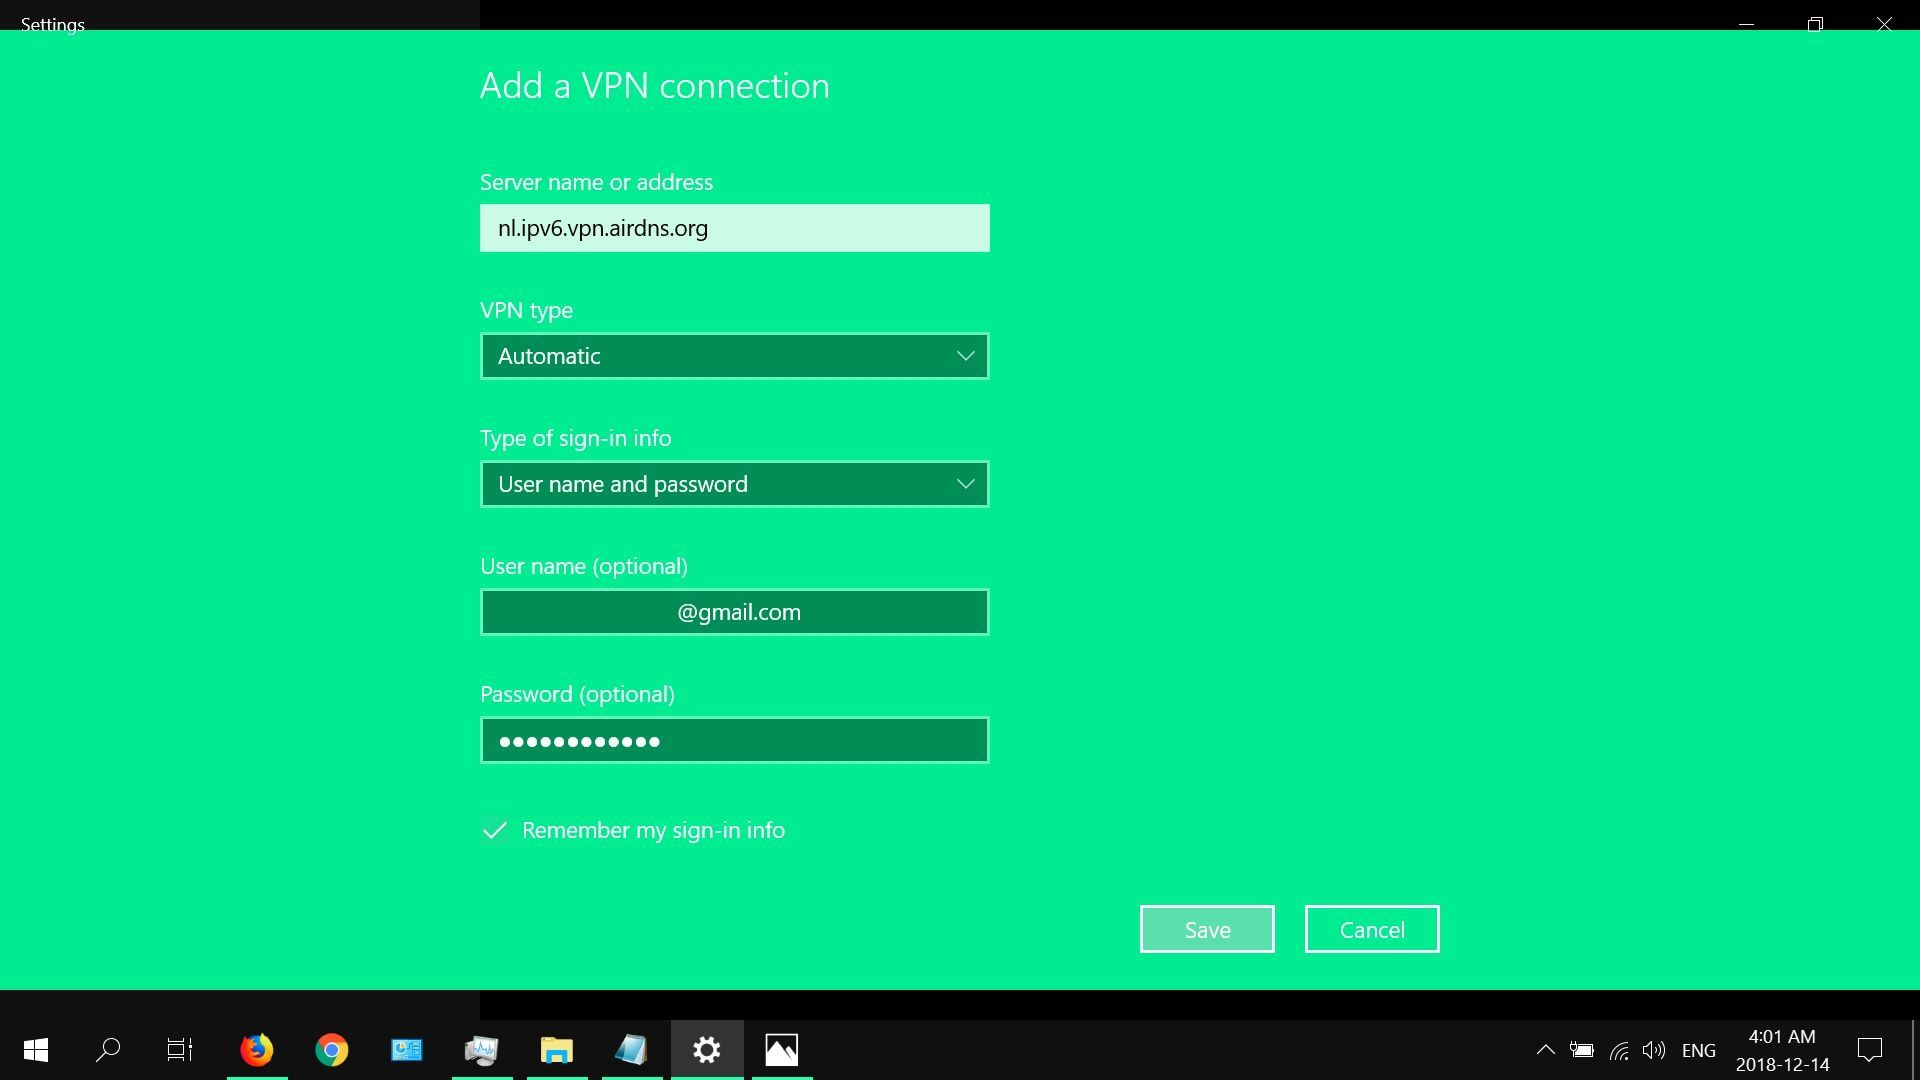 Скриншот поля имени пользователя и пароля во встроенном VPN-клиенте Windows 10.